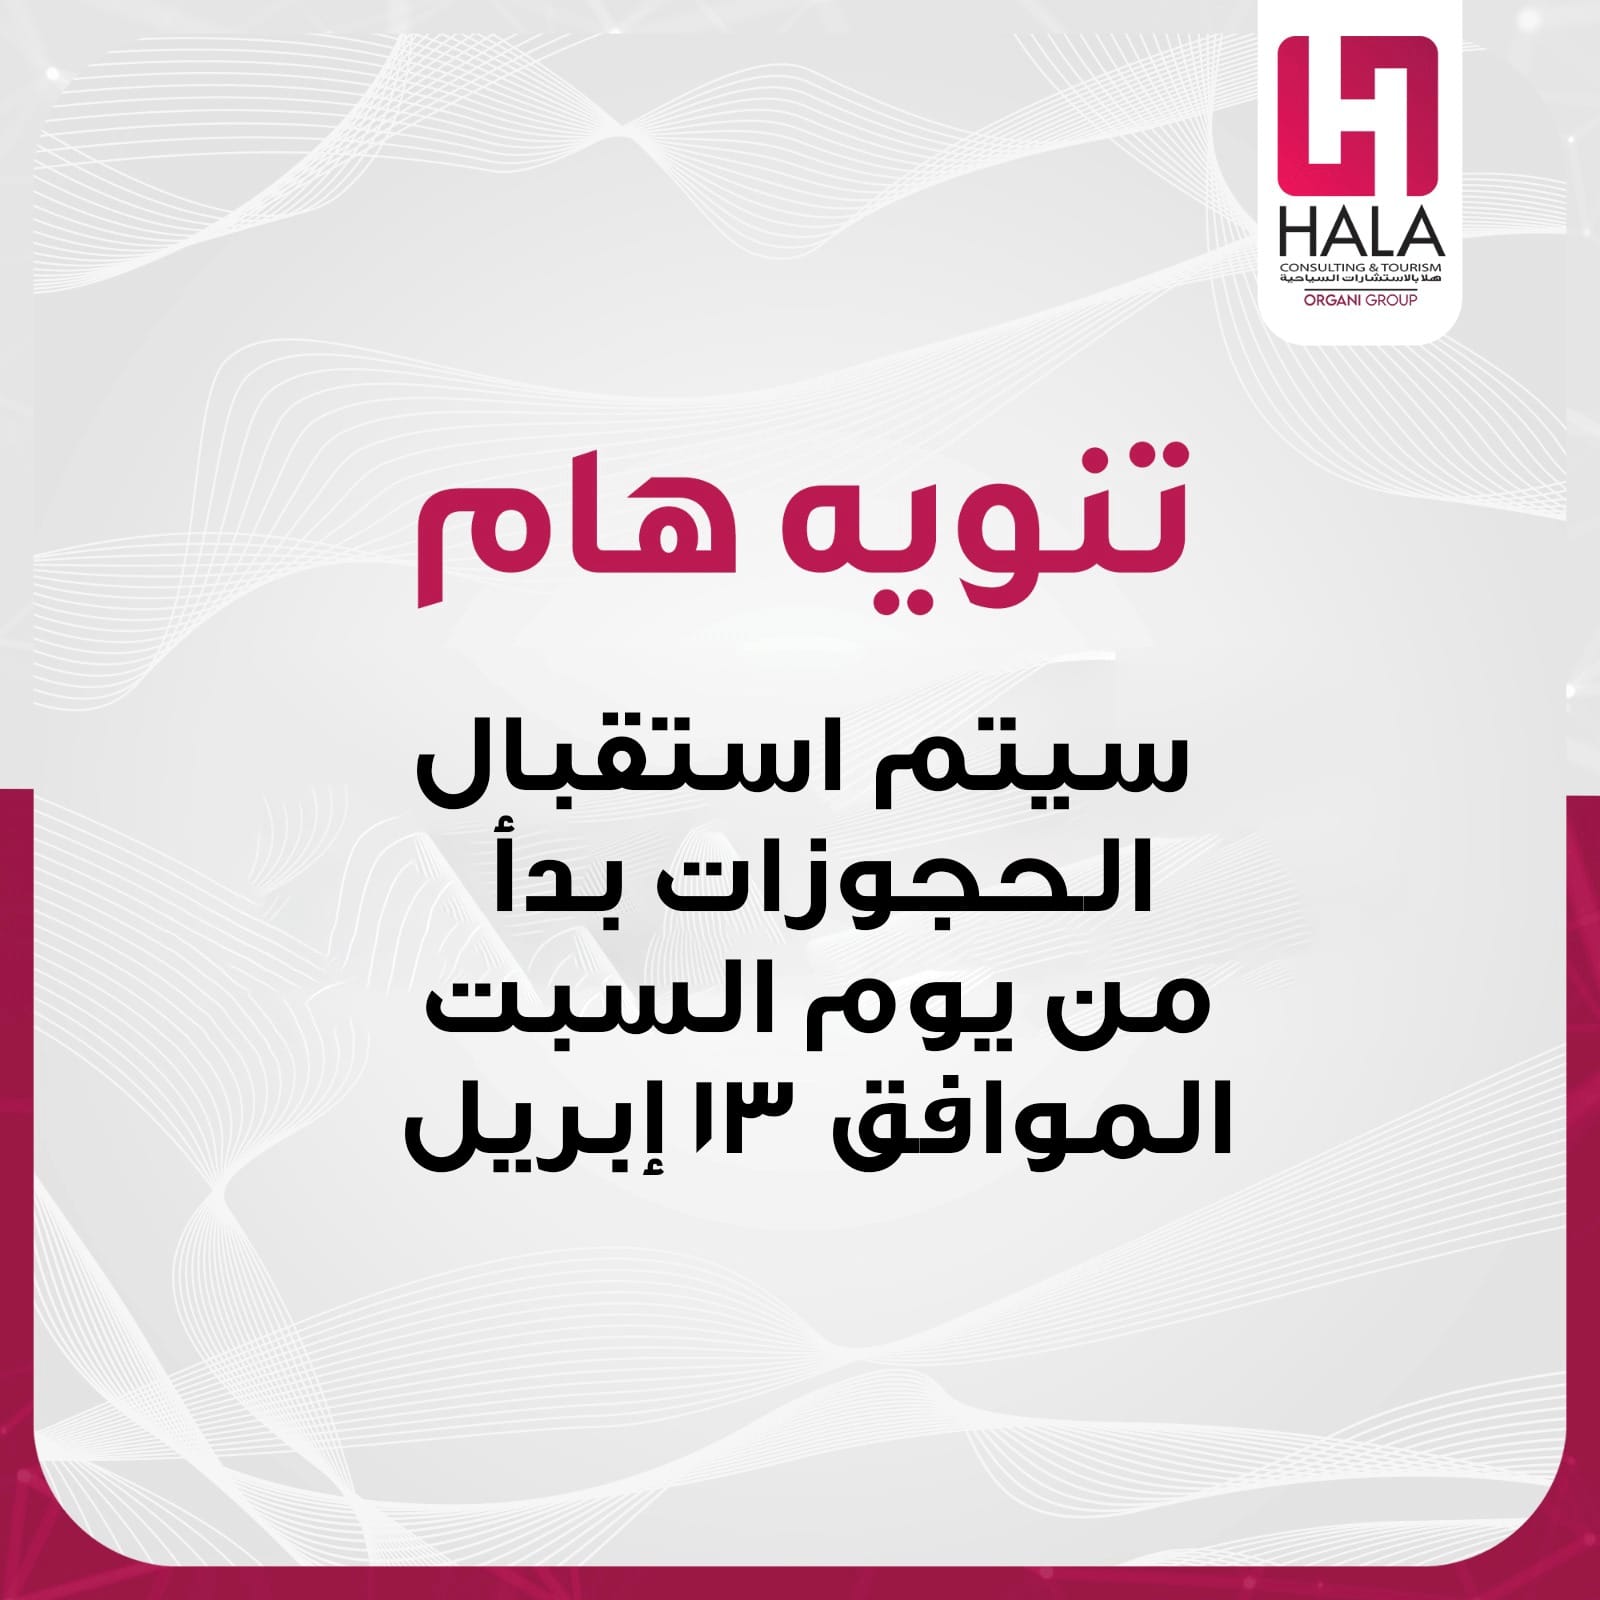 إعلان شركة هلا المصرية لاستقبال حجوزات الخروج من غزة